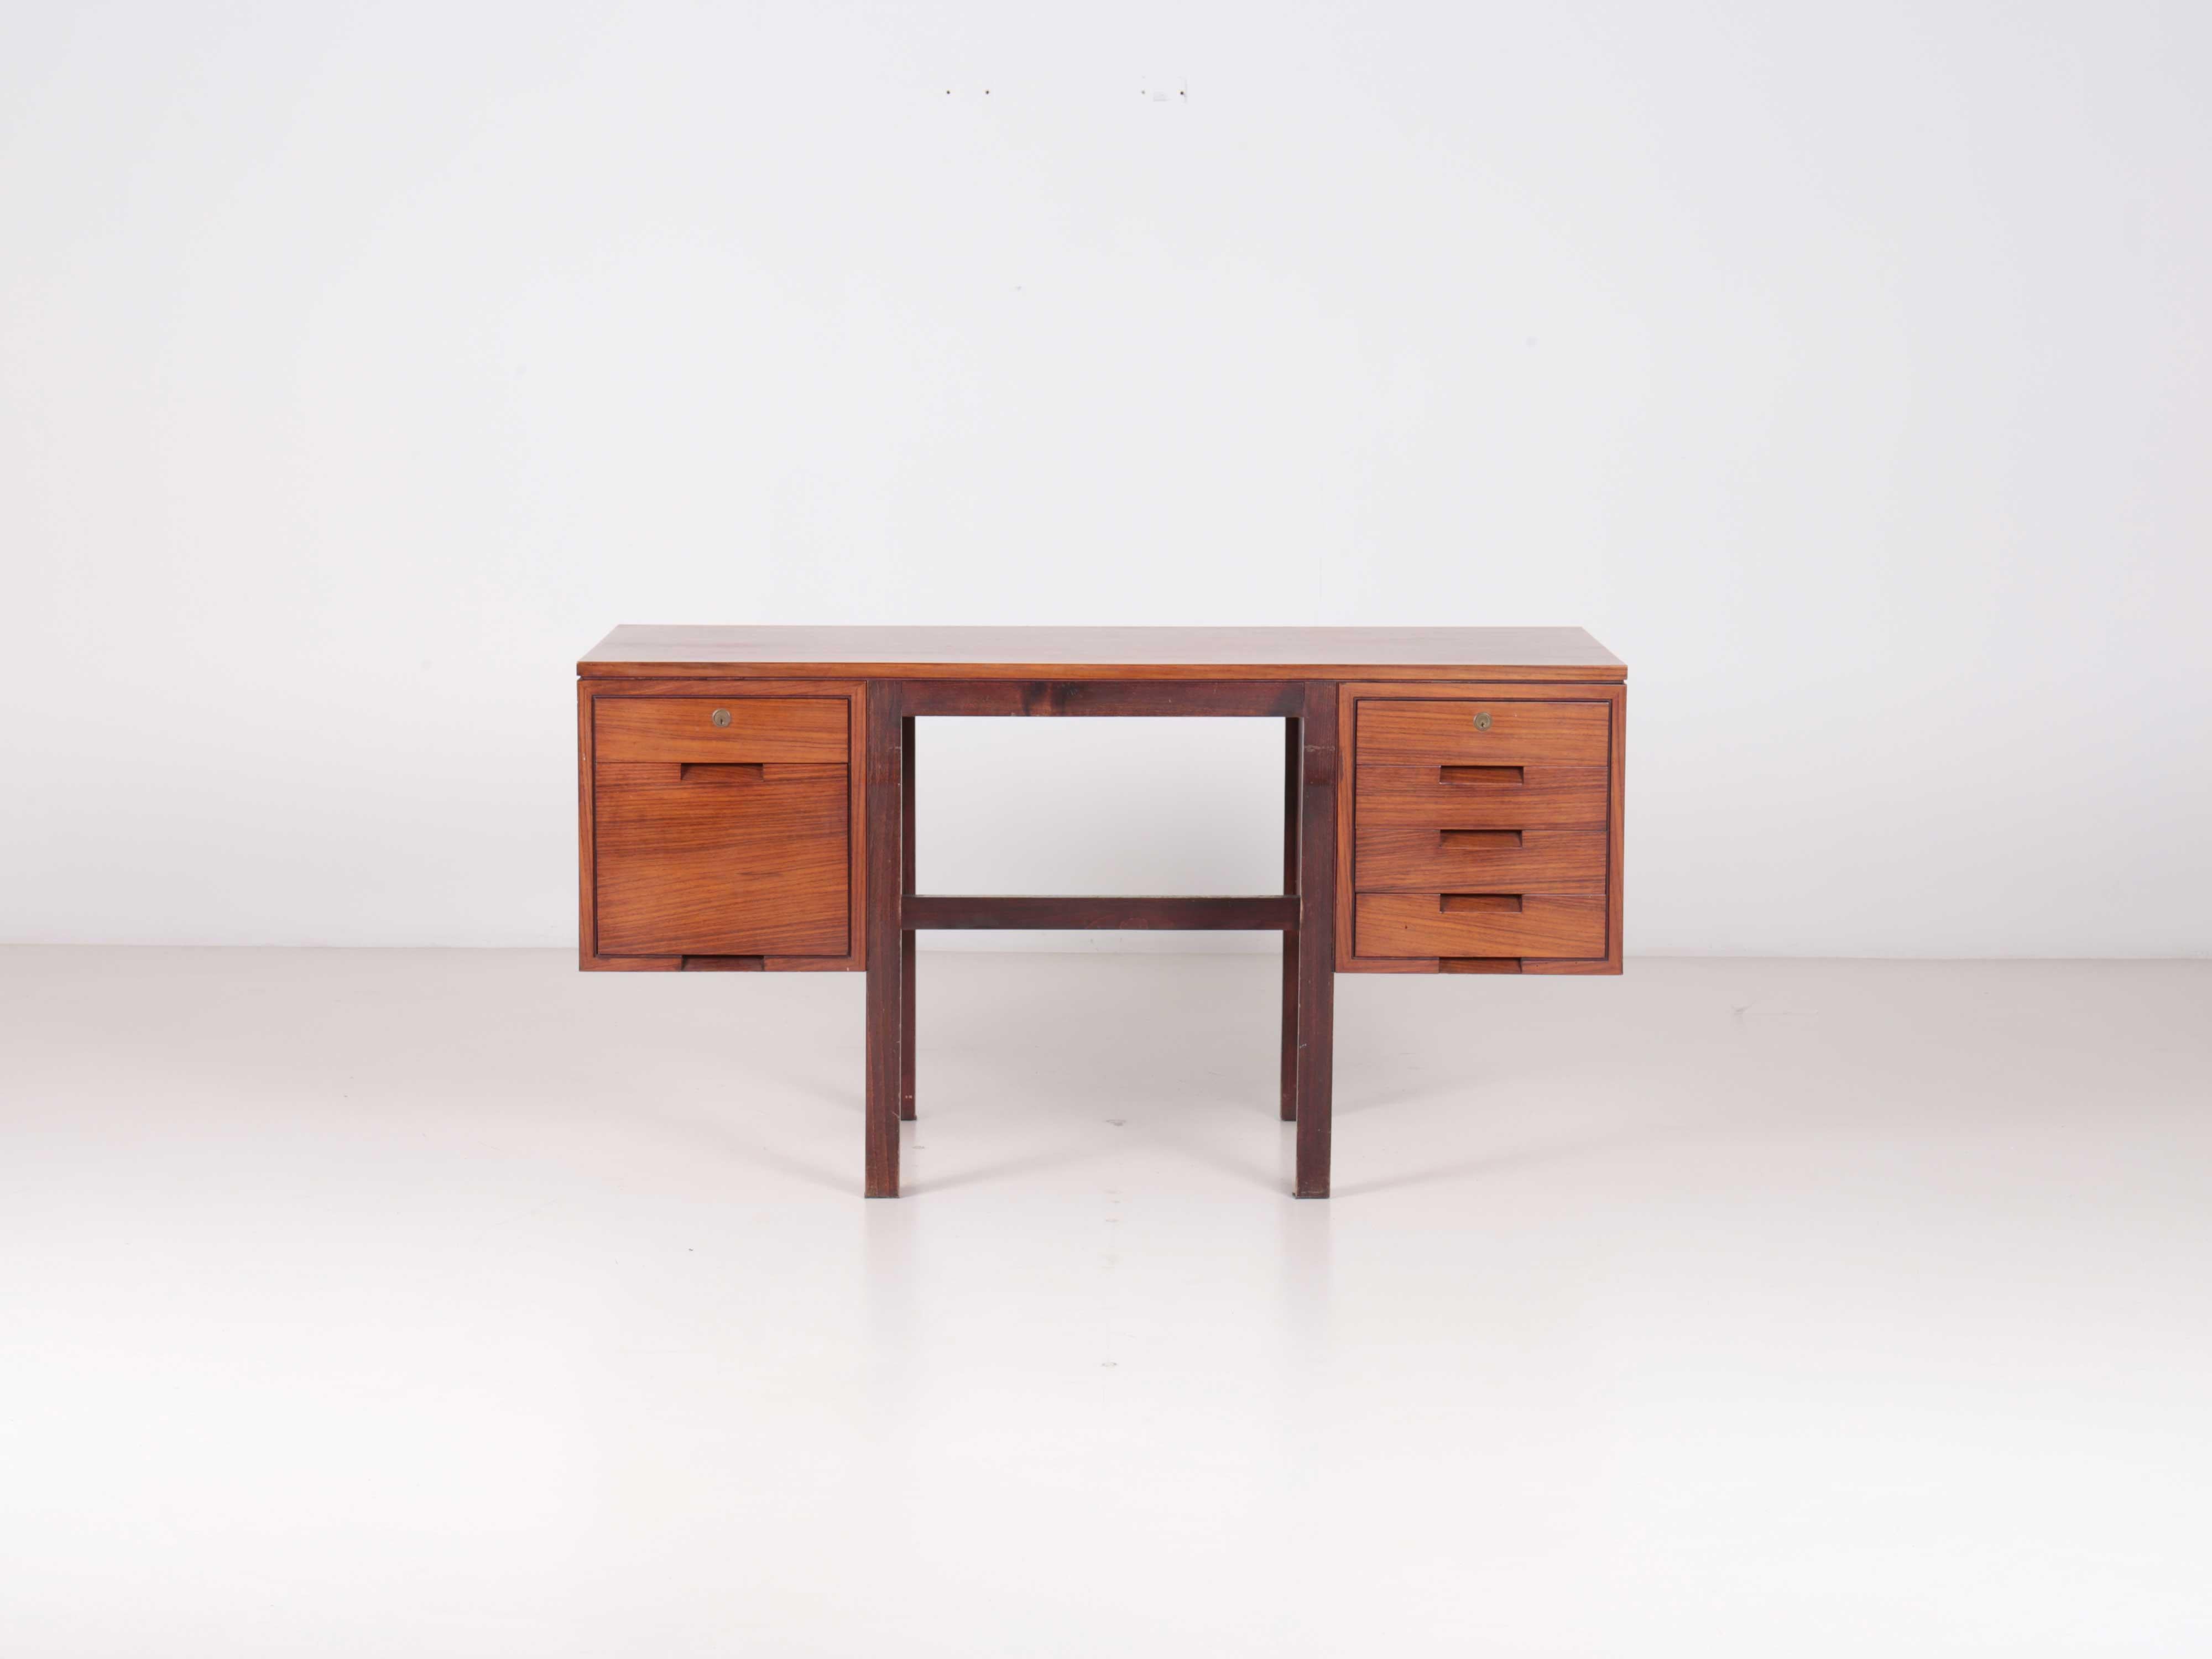 Bureau Canaan de Marcel Breuer, produit par Gavina spa en 1962. 

Bureau avec tiroirs et classeur. Structure en bois de rose.

Dino Gavina était dans la maison de campagne de Breuer à &New. C'est là qu'il trouva ce chef-d'œuvre et décida de le